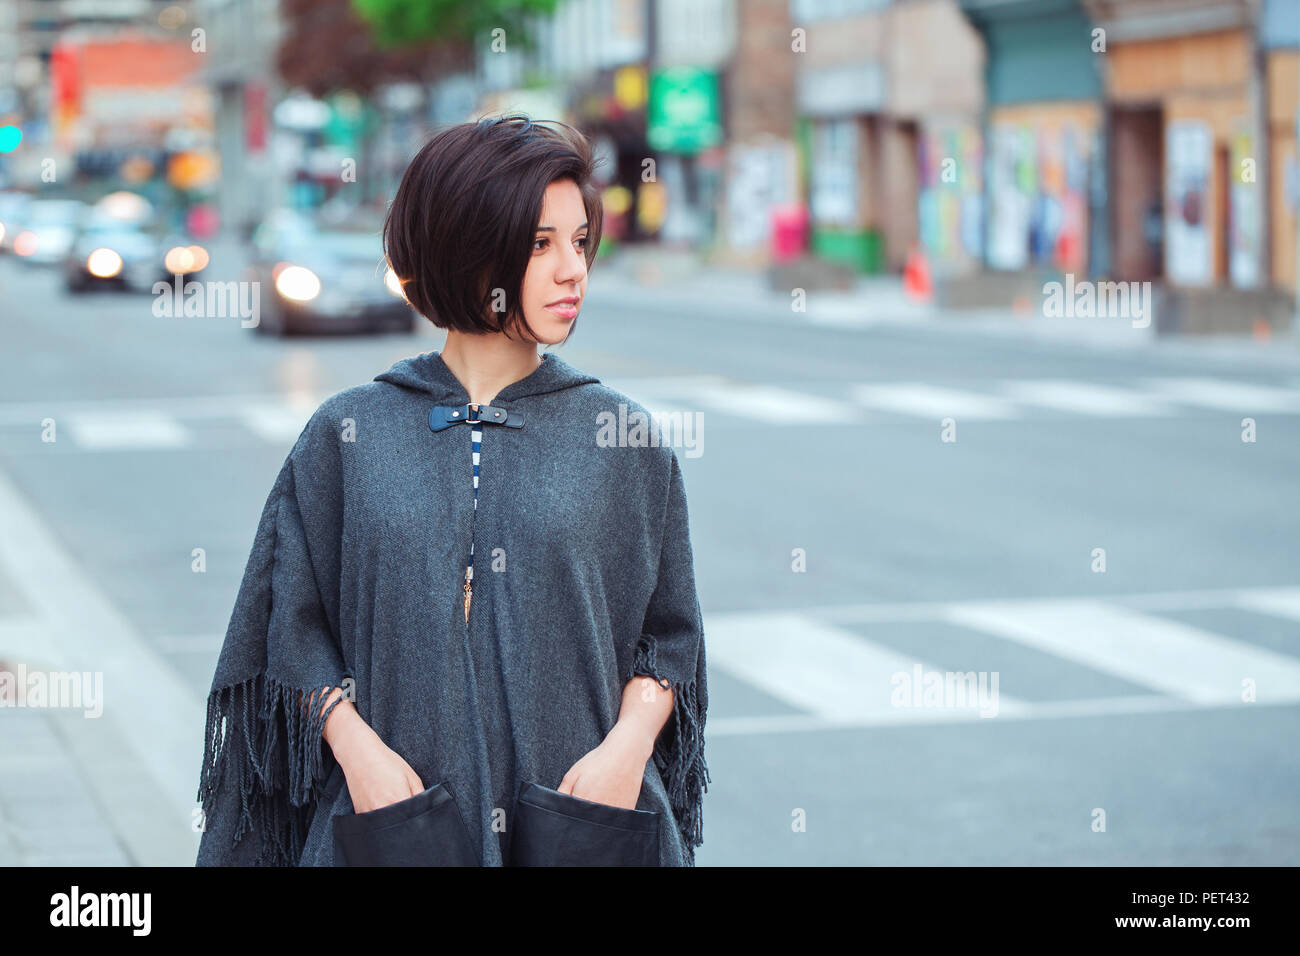 Portrait von schönen jungen hipster Lateinamerika hispanische Mädchen Frau  mit kurzen Haaren Bob in grau blau Poncho-cape außerhalb der Stadt Straße  awa Stockfotografie - Alamy